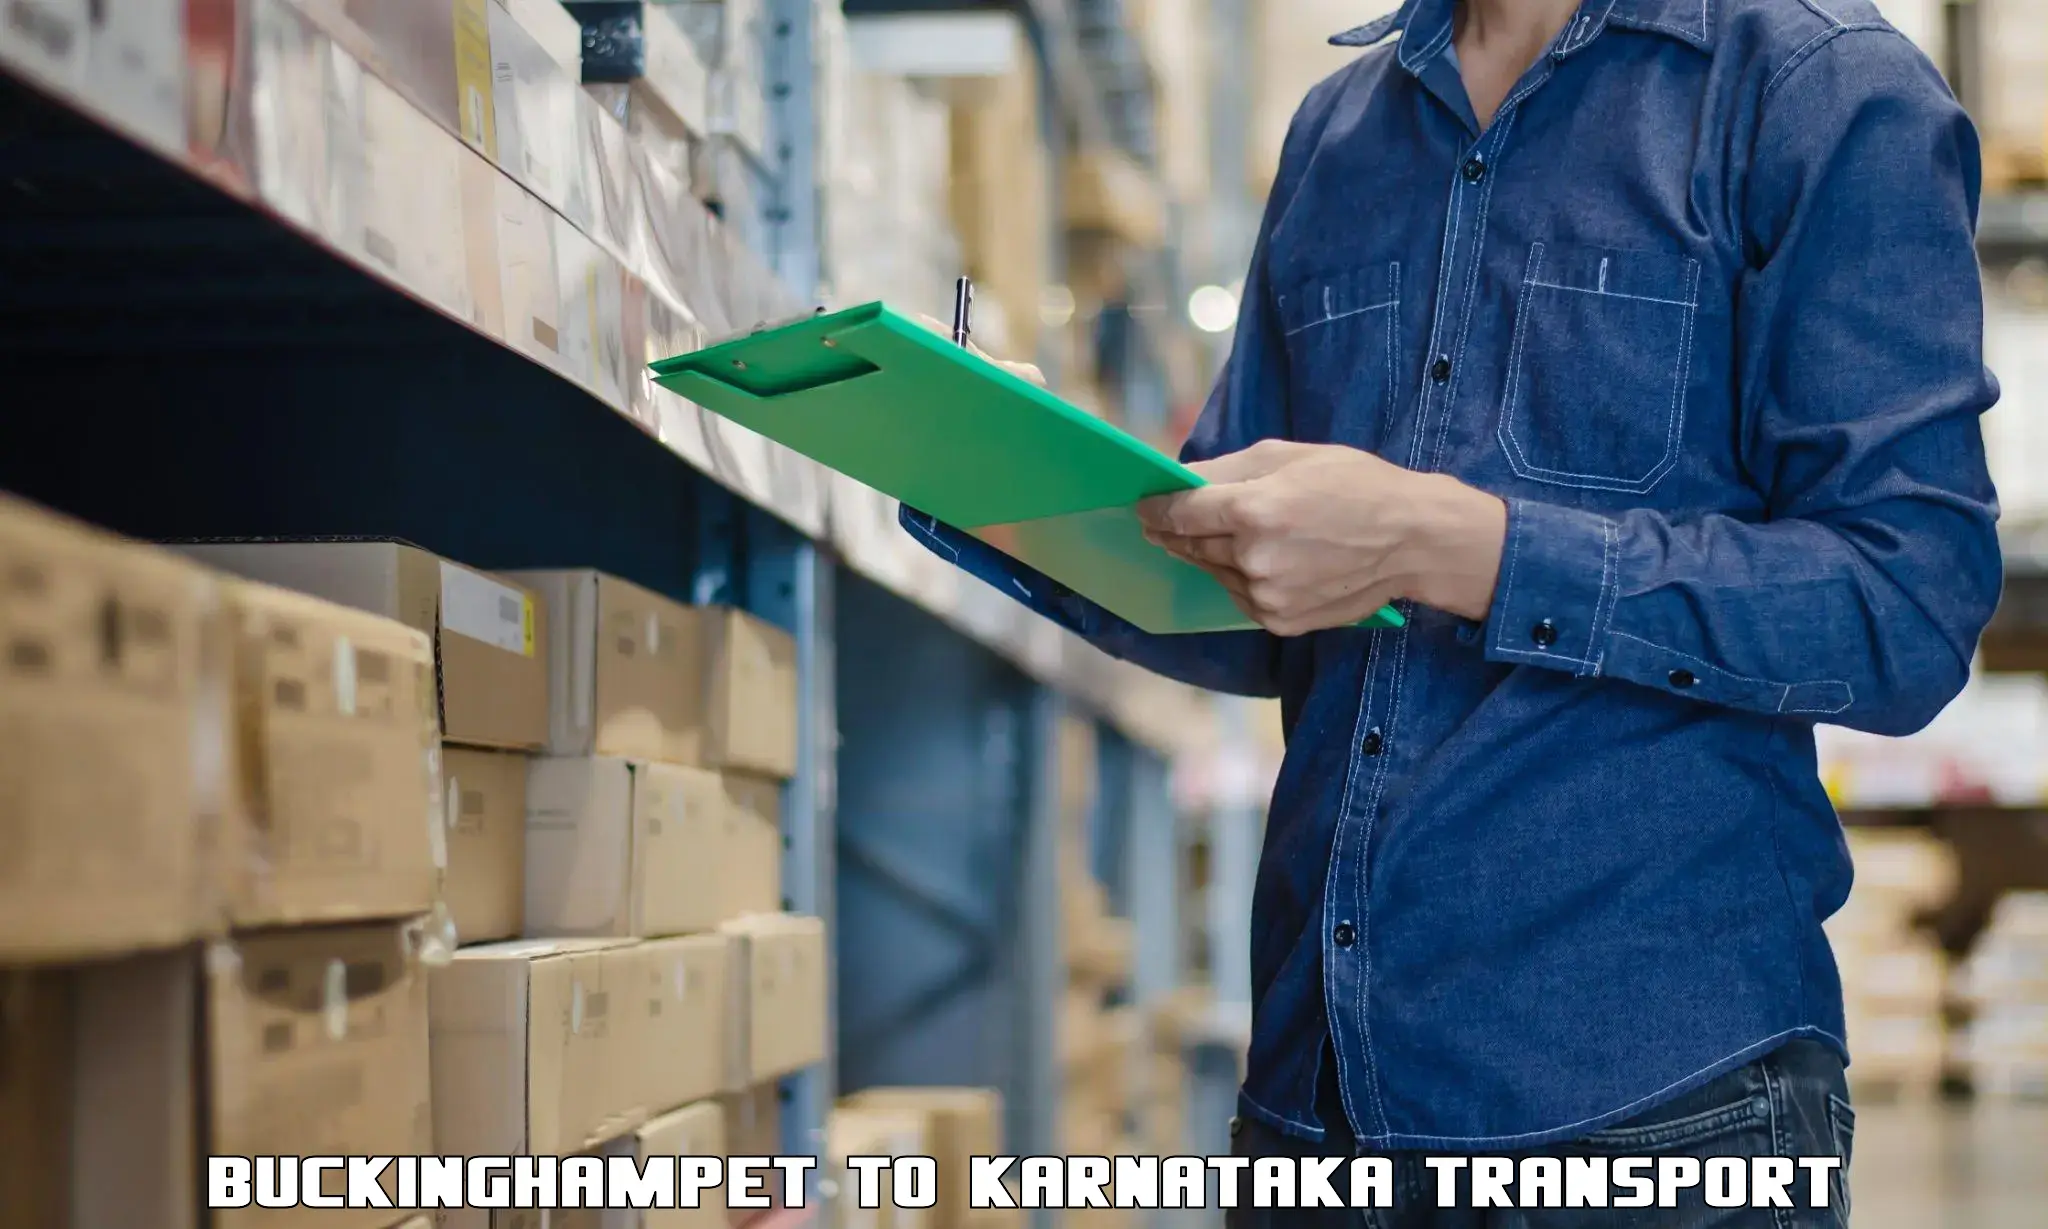 Furniture transport service Buckinghampet to Karnataka